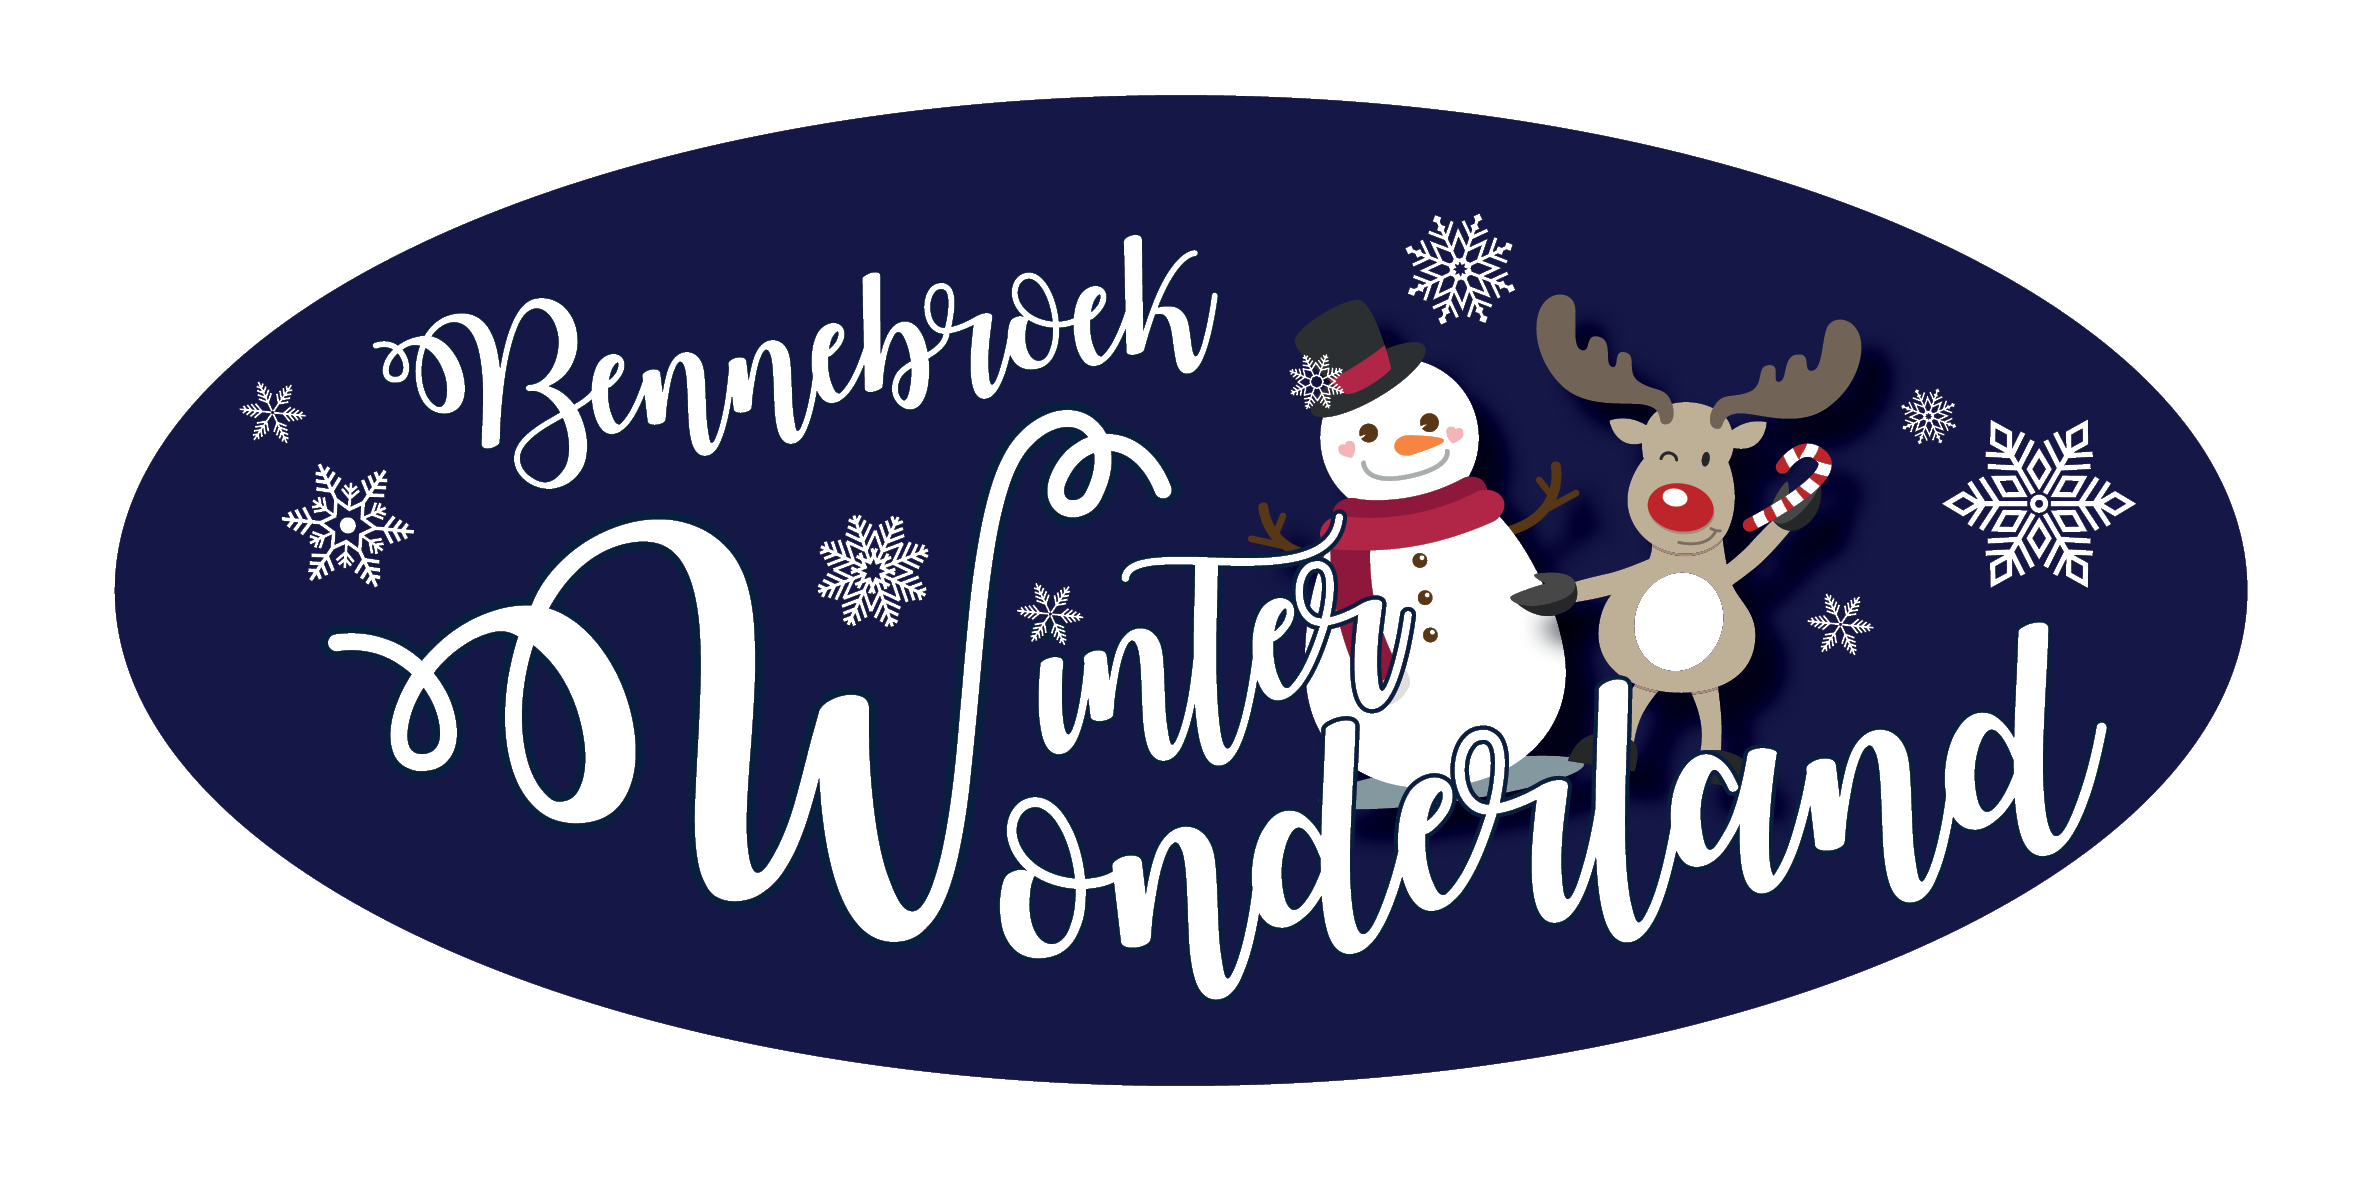 Bennebroek Winter Wonderland